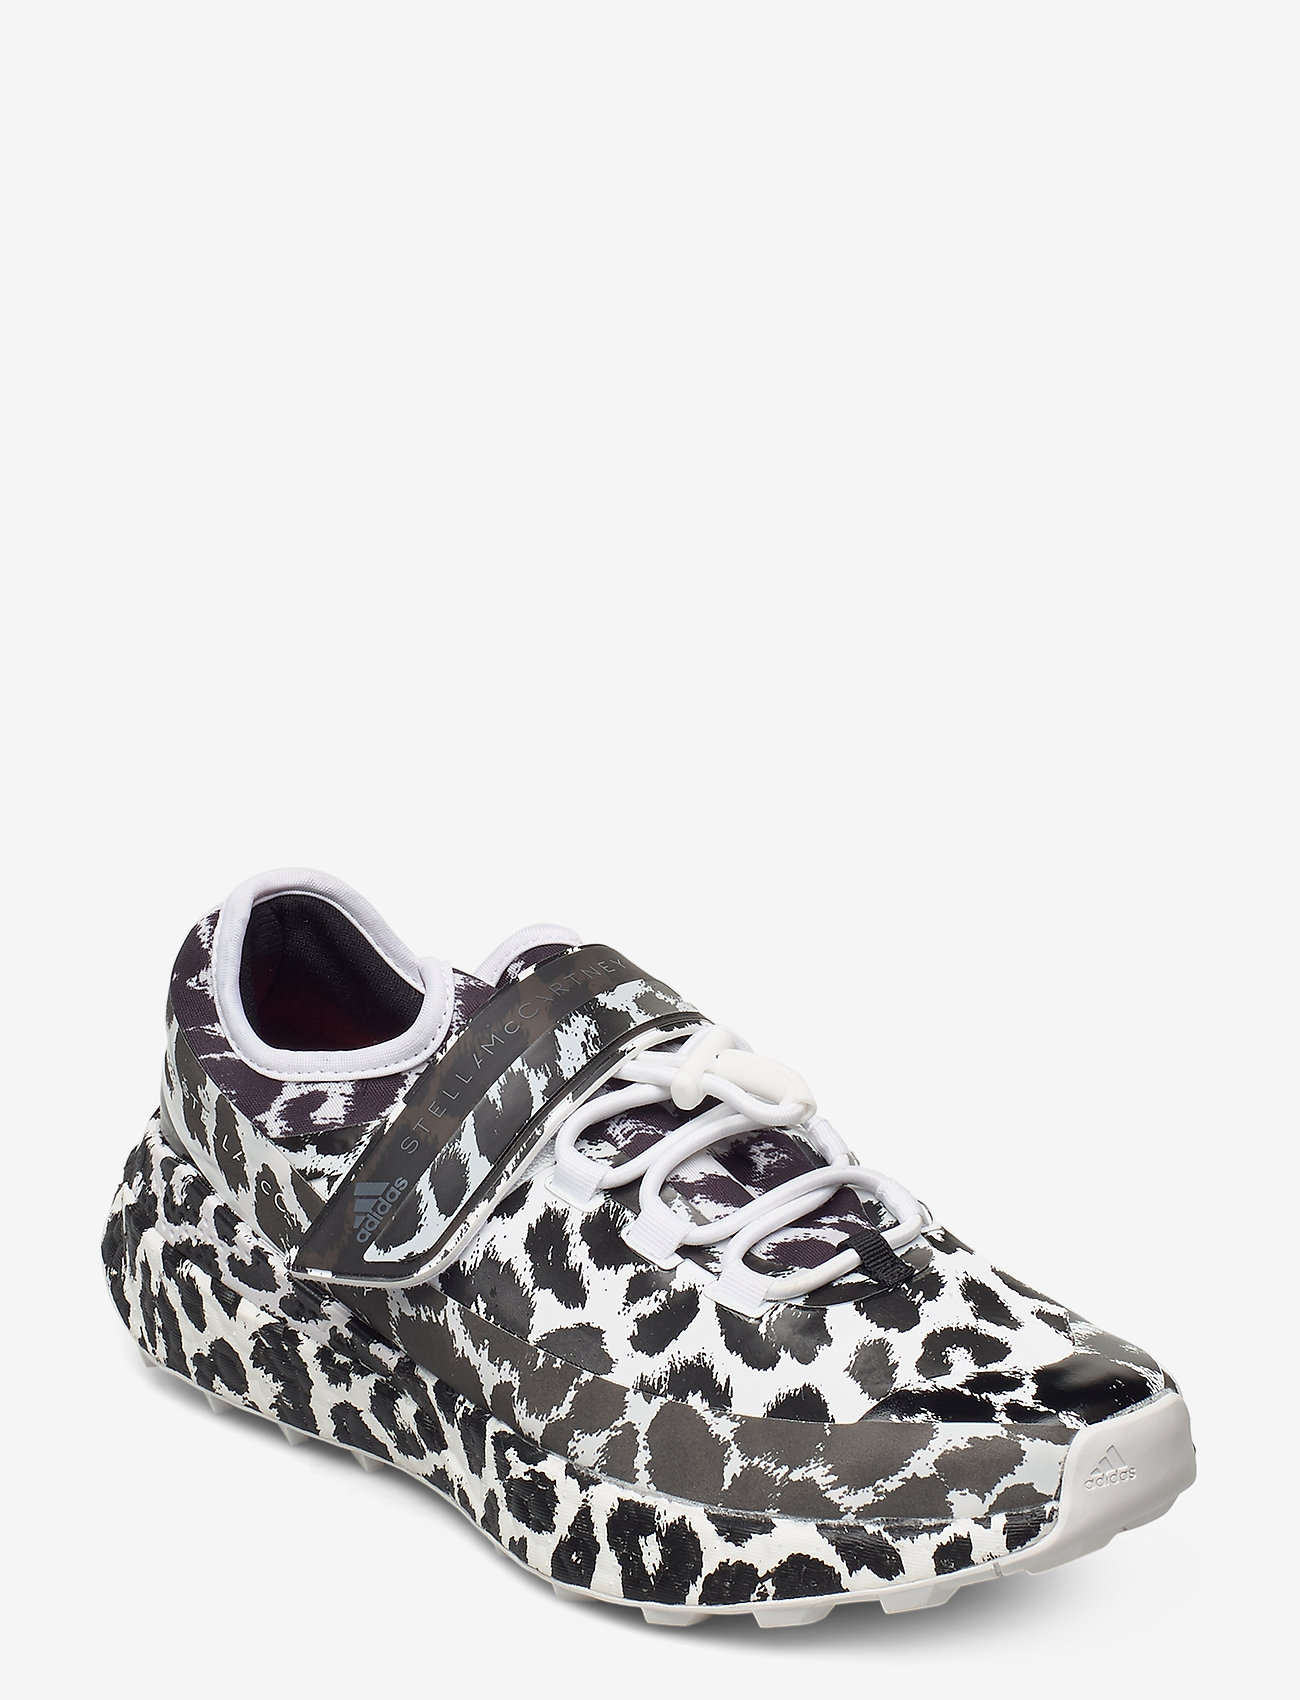 stella mccartney leopard sneakers